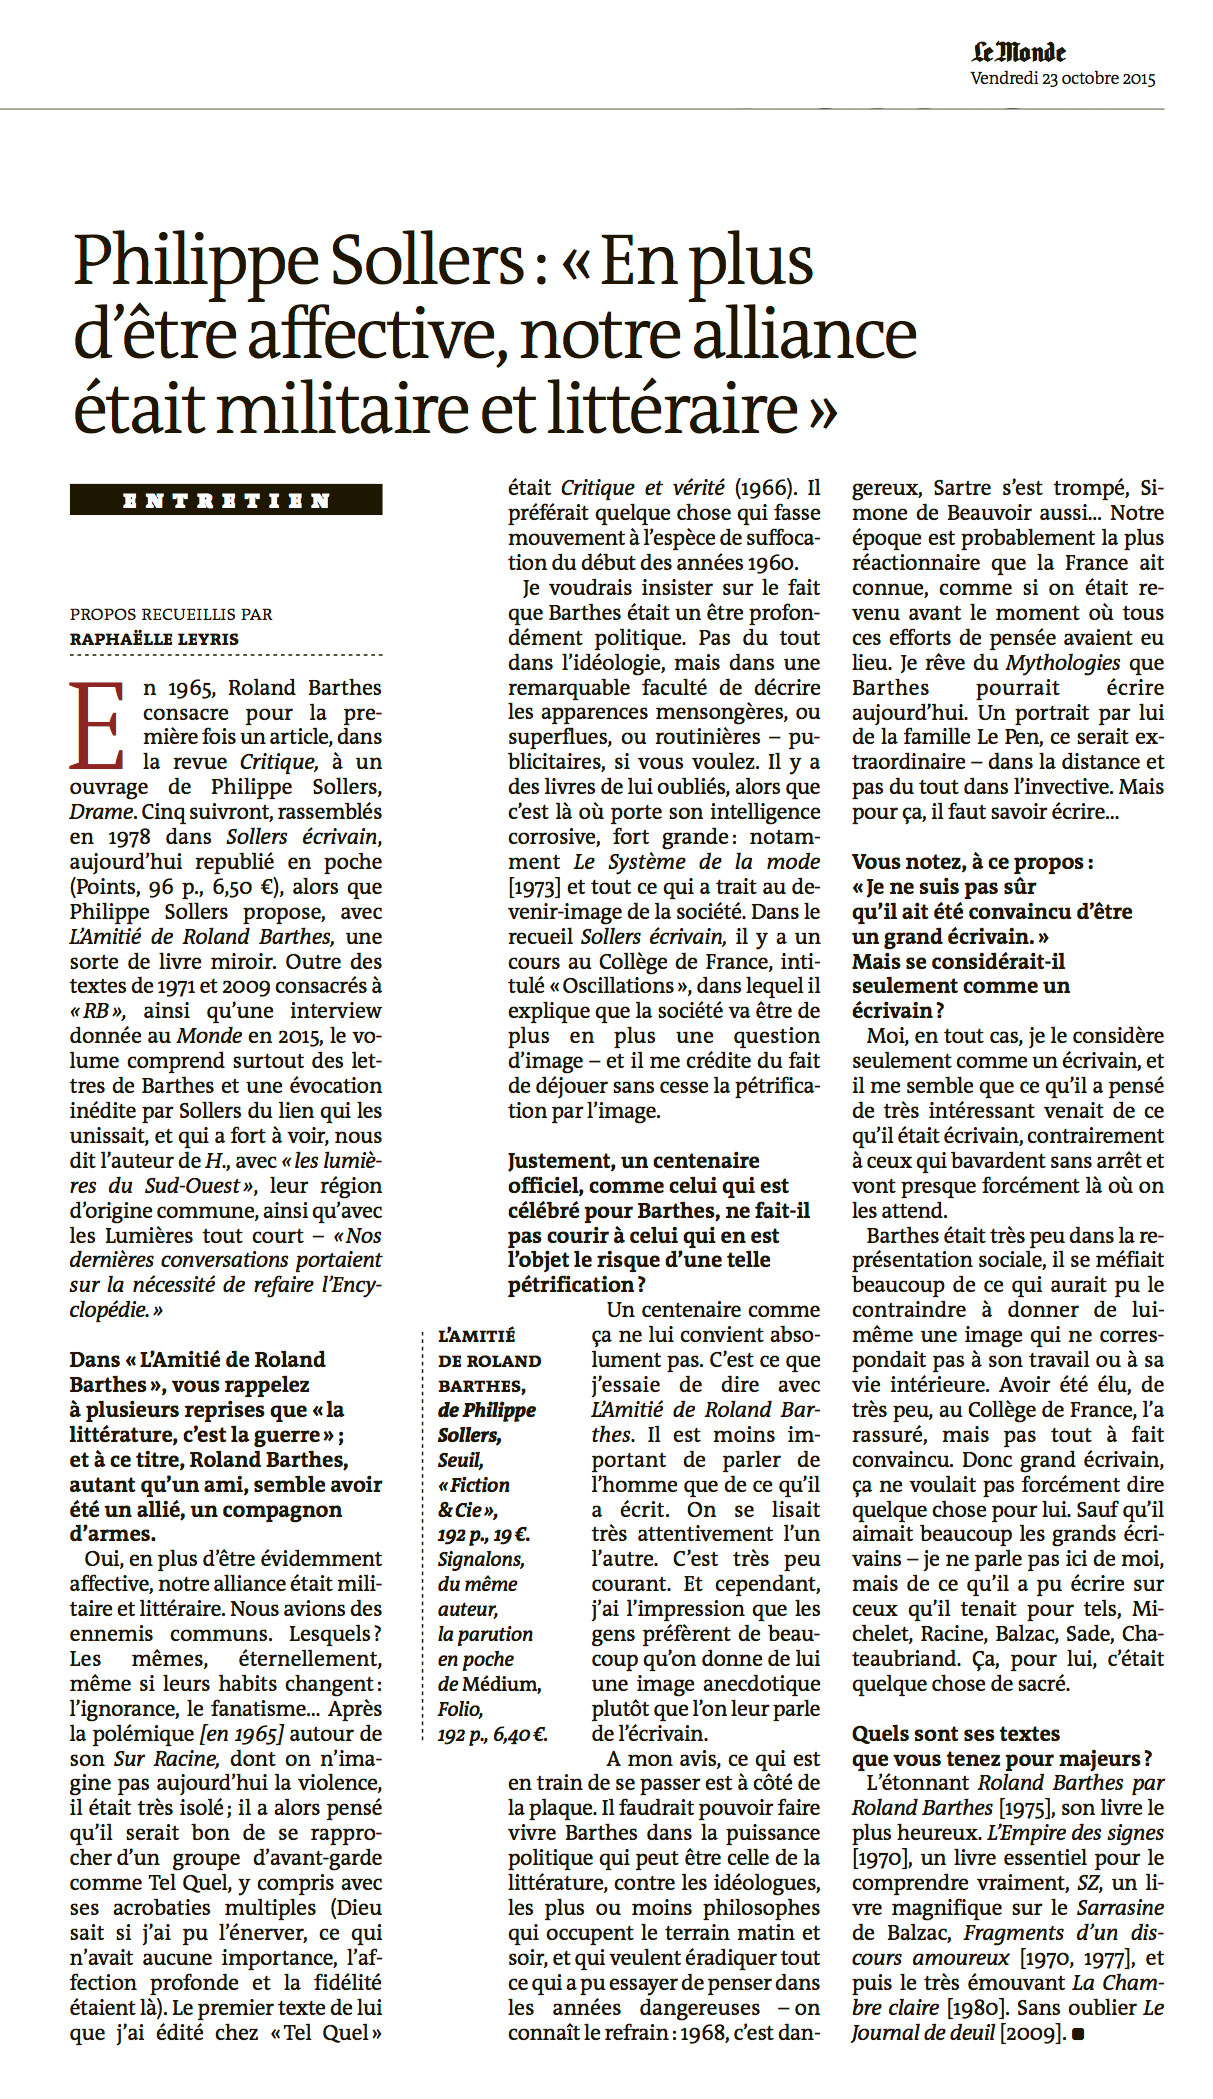 Sollers sur Roland Barthes, Le Monde du 23 octobre 2015